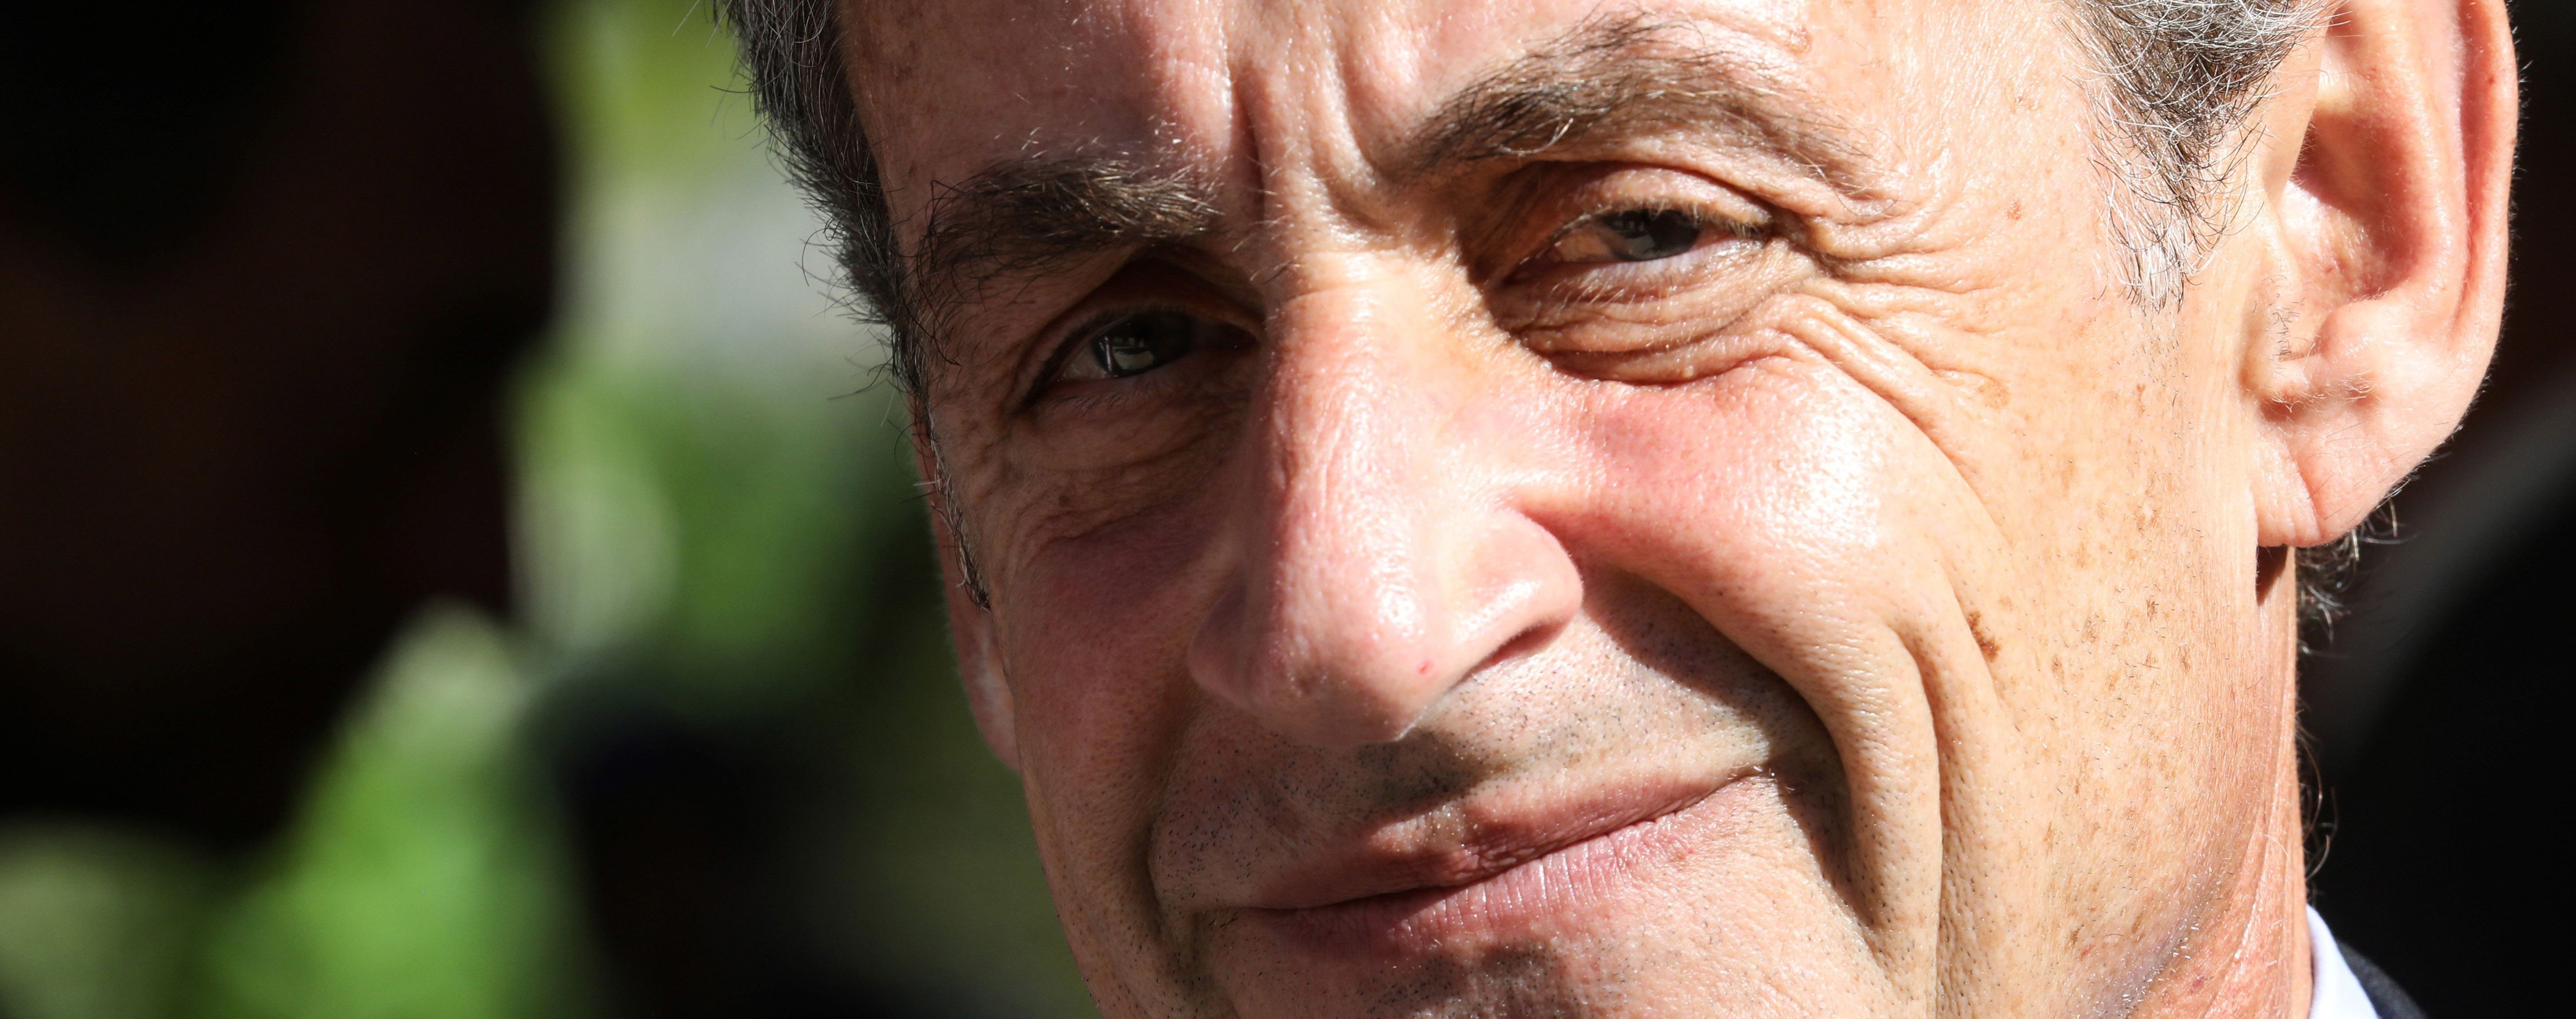 Колишнього президента Франції Ніколя Саркозі засудили до 1 року в'язниці